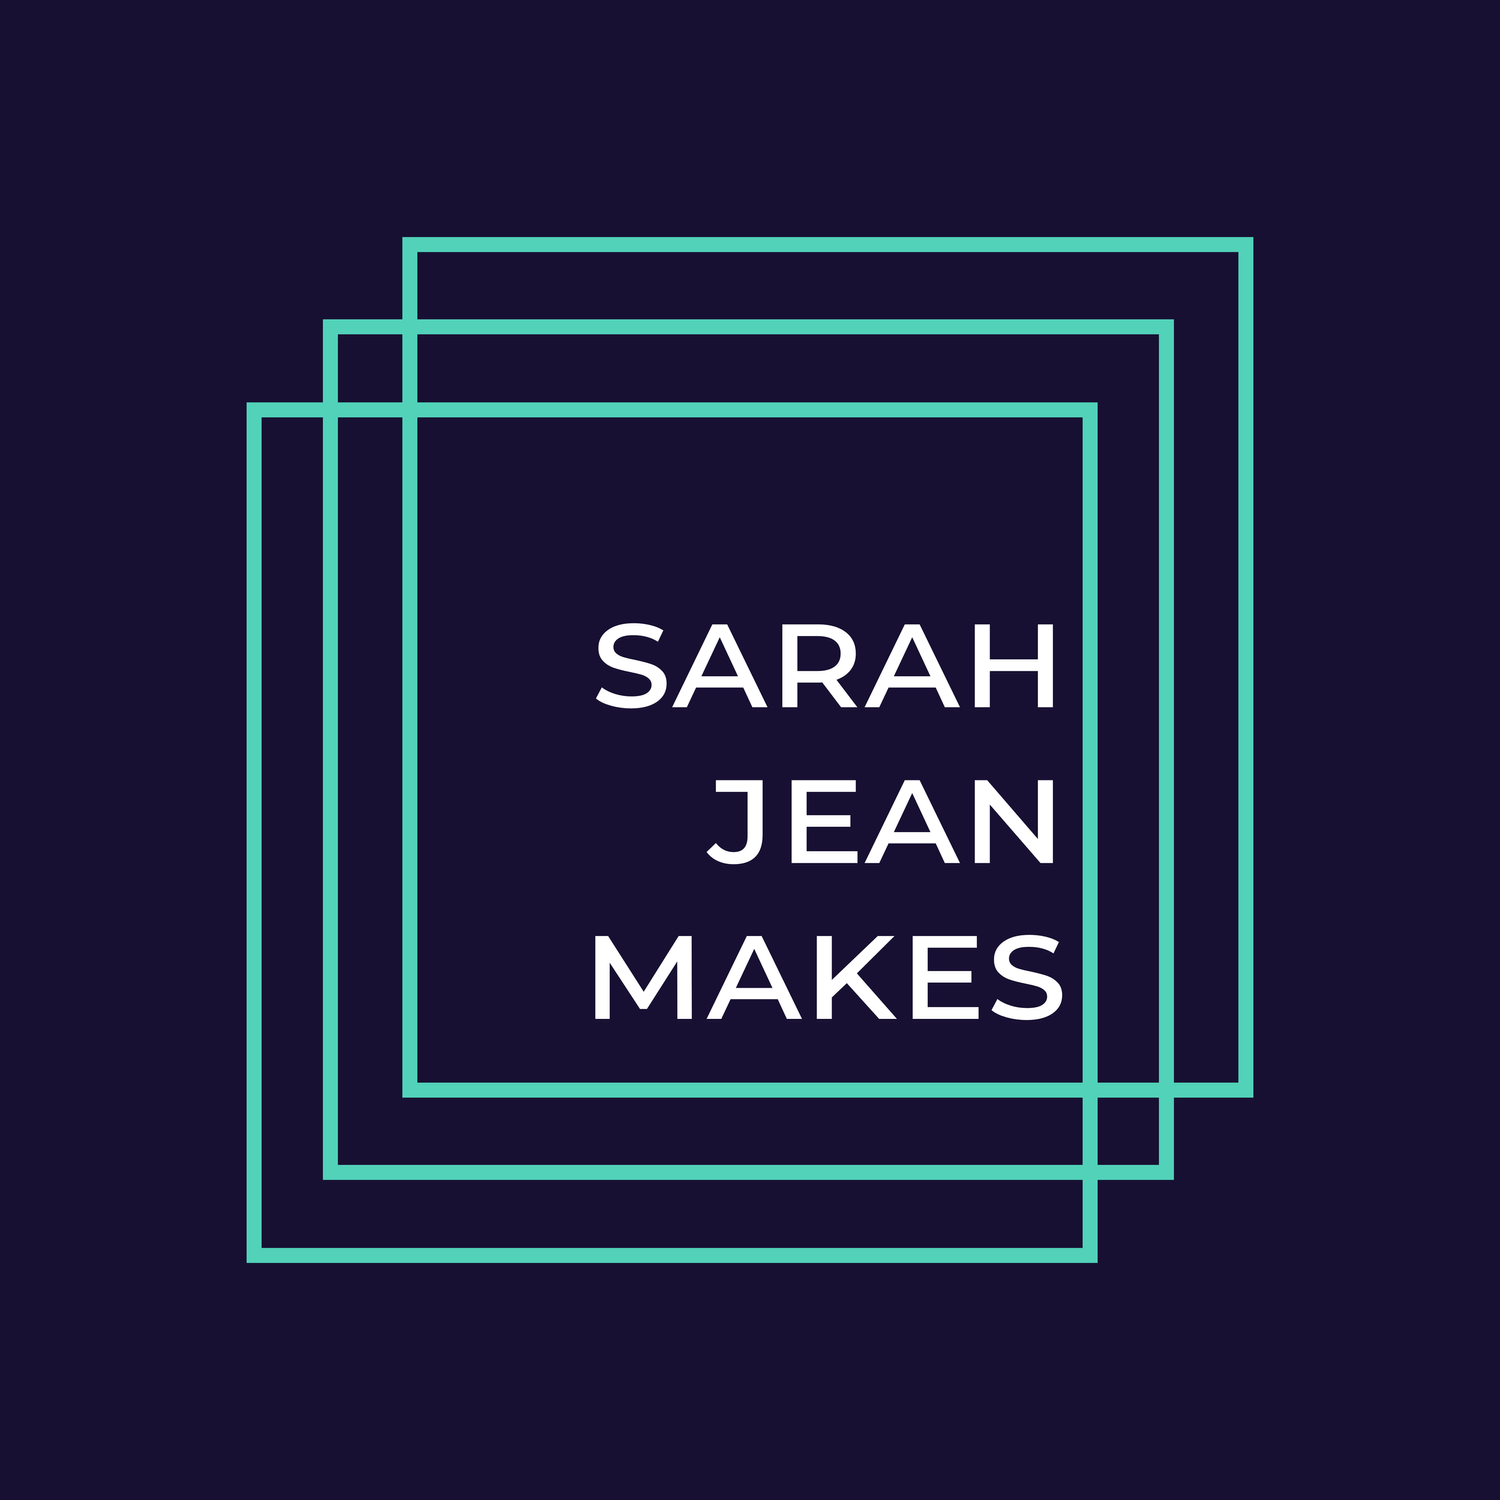 Sarah Jean Makes